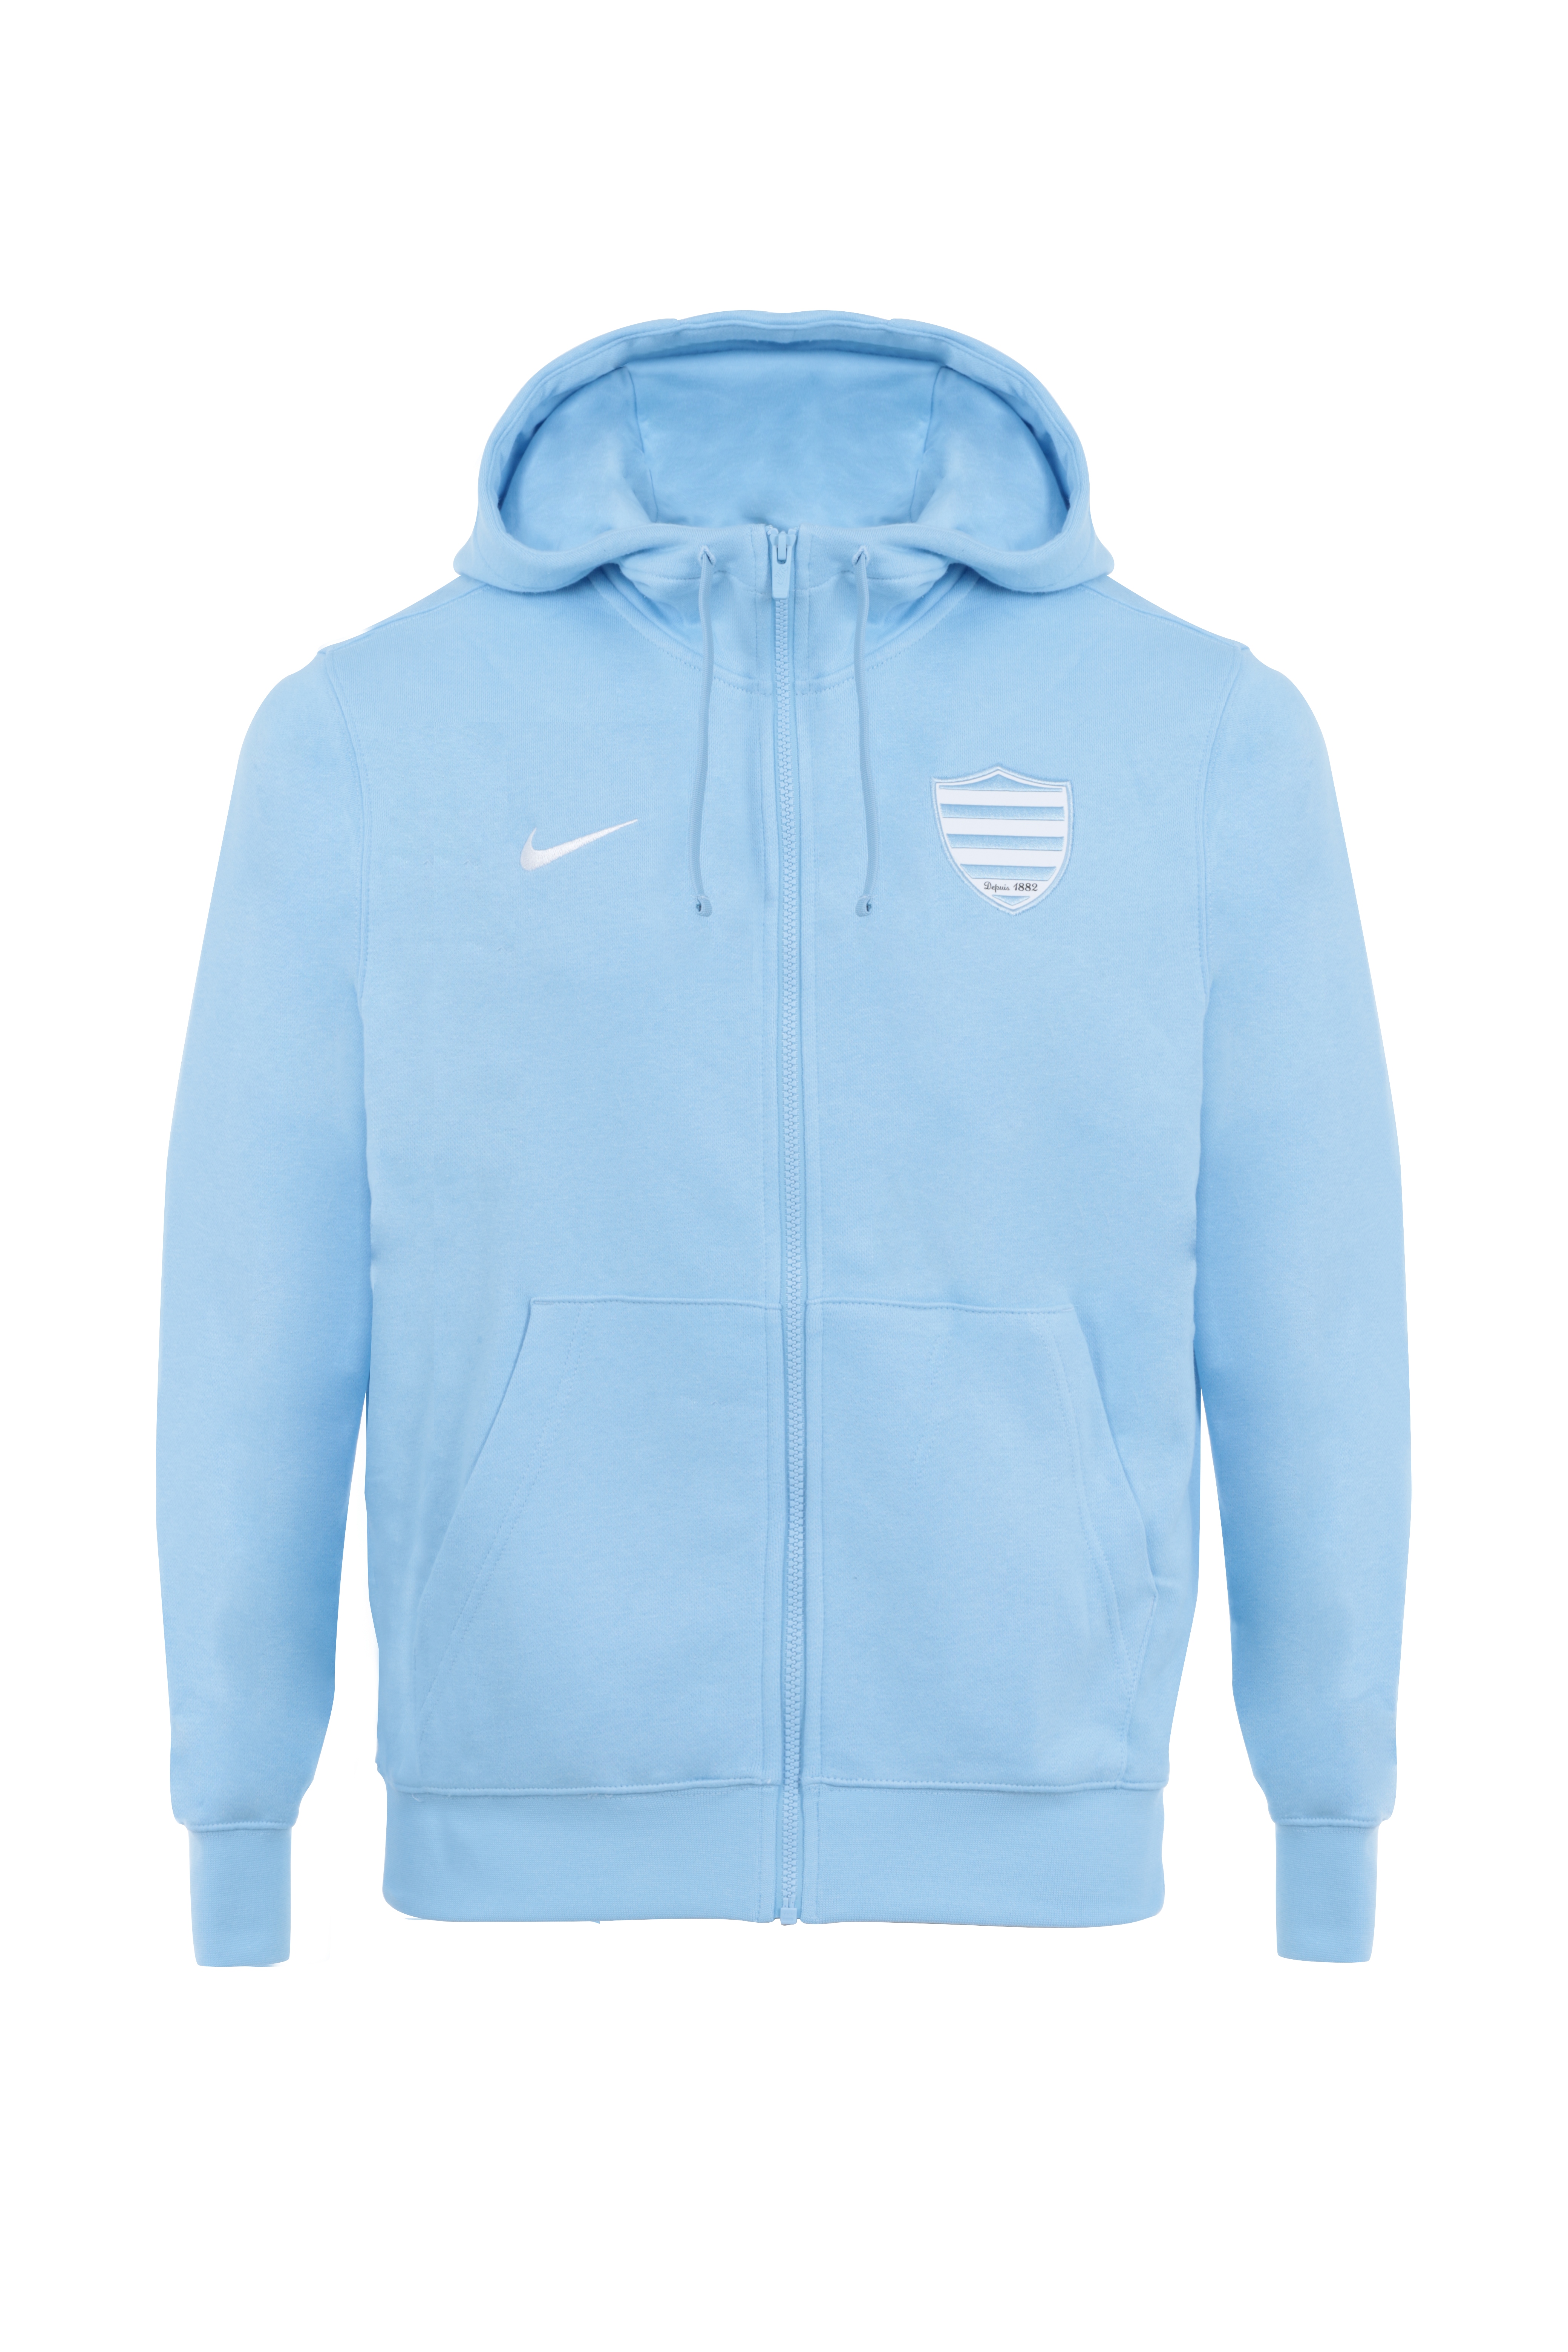 Veste capuche Nike pour homme Training Hoodie - Bleu nuit